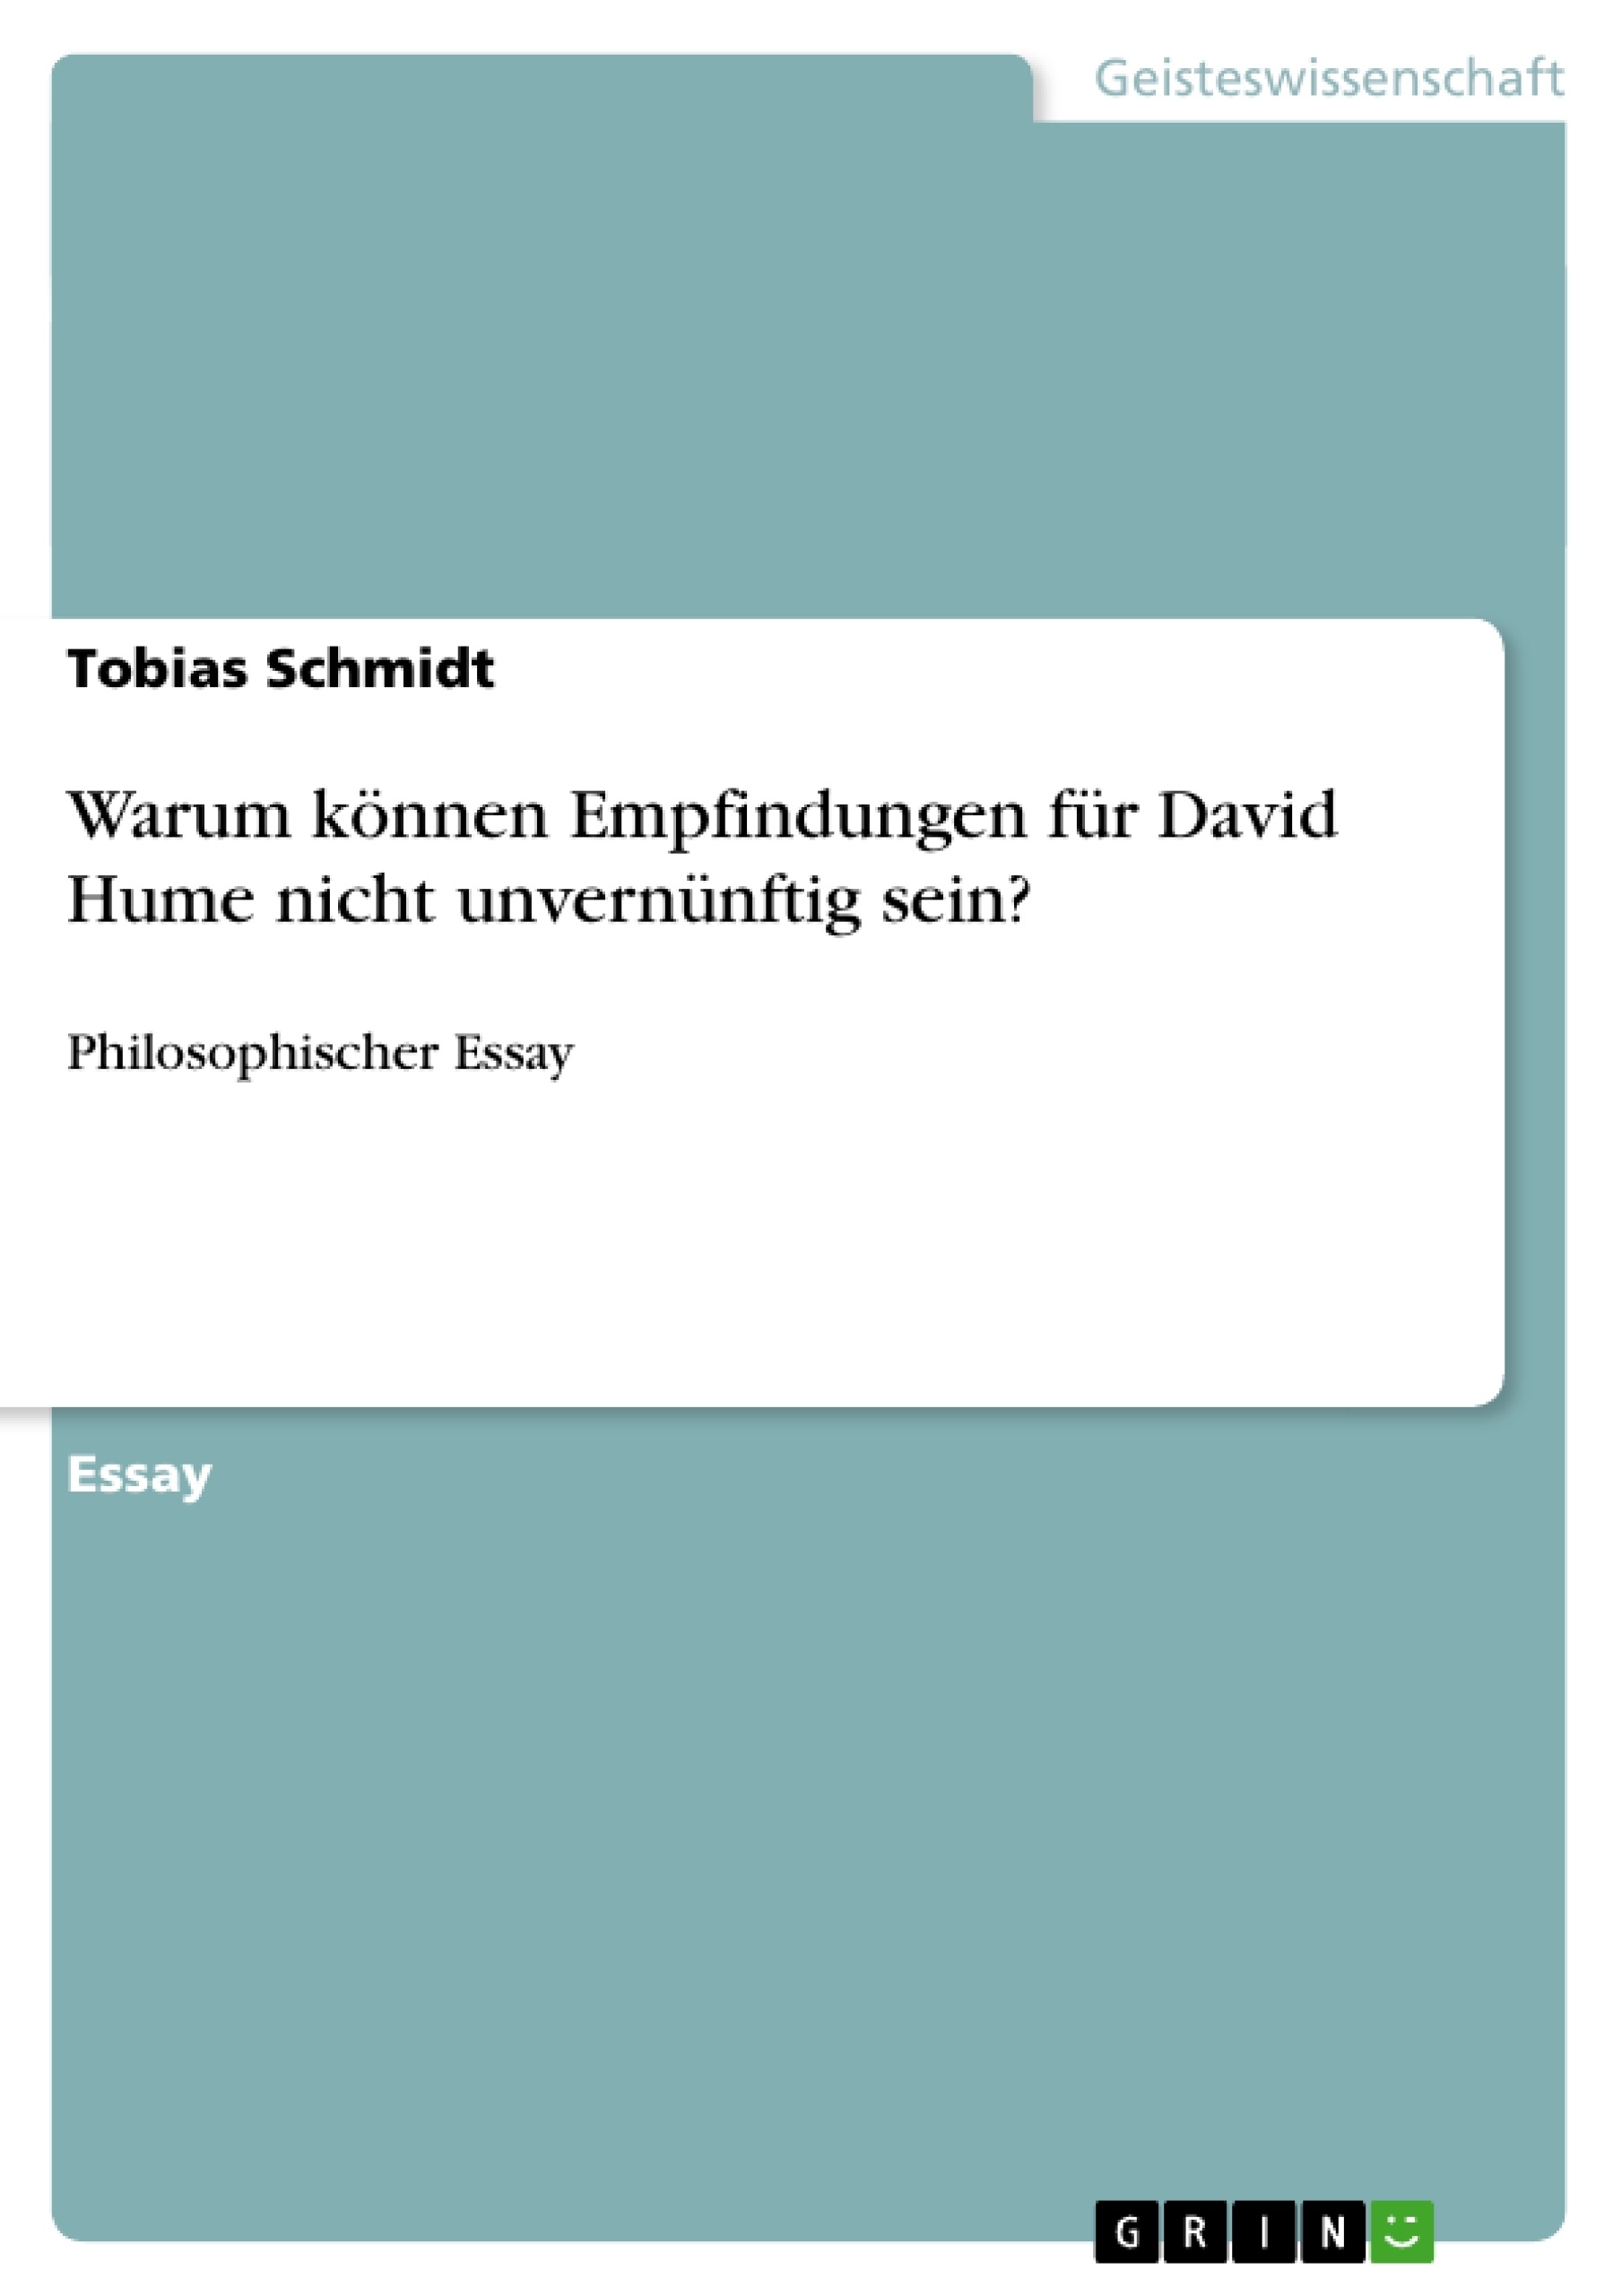 Titre: Warum können Empfindungen für David Hume nicht unvernünftig sein?